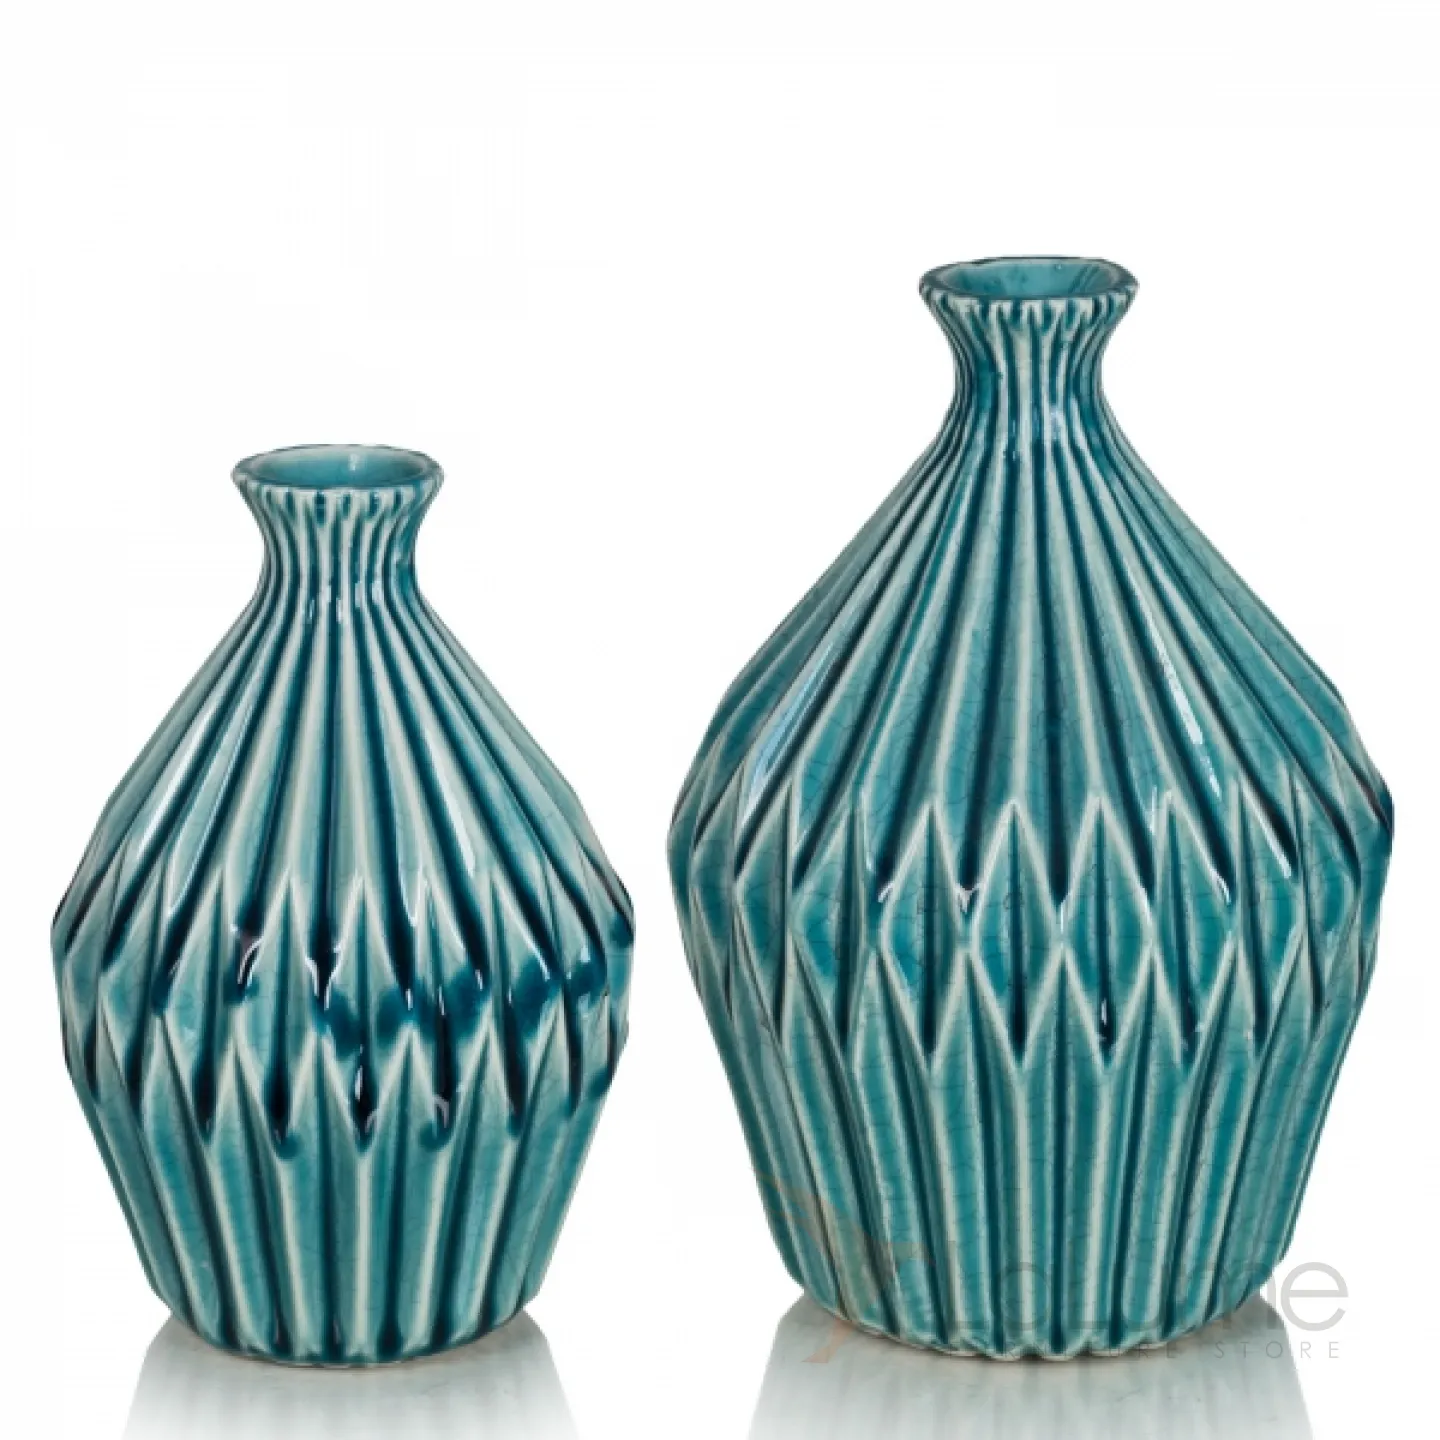 Декоративная вазочка. Стильные вазы. Дизайнерские вазы. Декоративные вазы для интерьера. Вазы керамические декоративные.